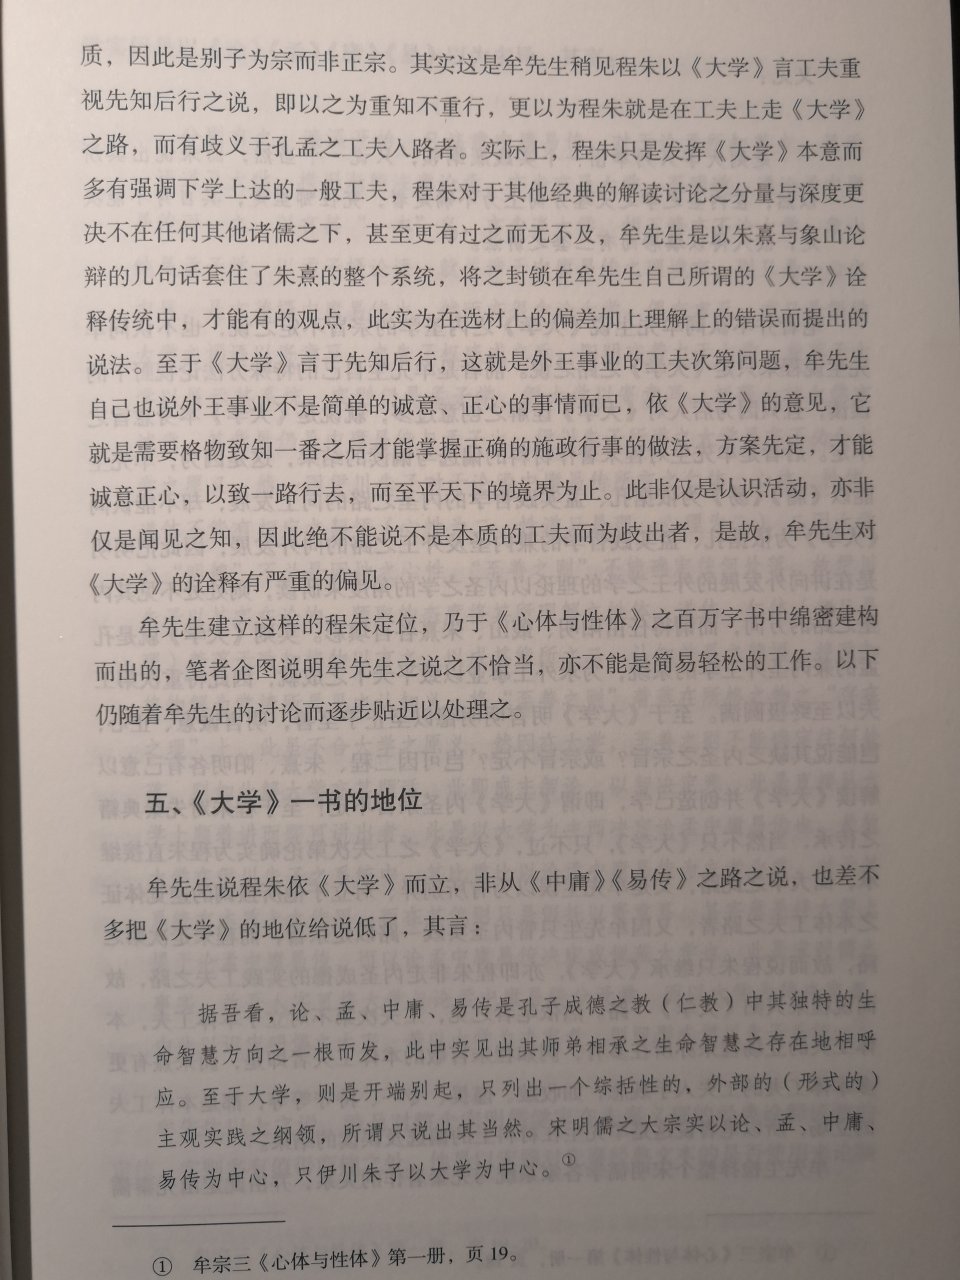 这部书，42万多字，是杜教授30多年学术工作的一项研究成果，本书的架构，直接依据心体与性体，从陆象山到刘蕺山两部书的章节次序，逐条对谈。